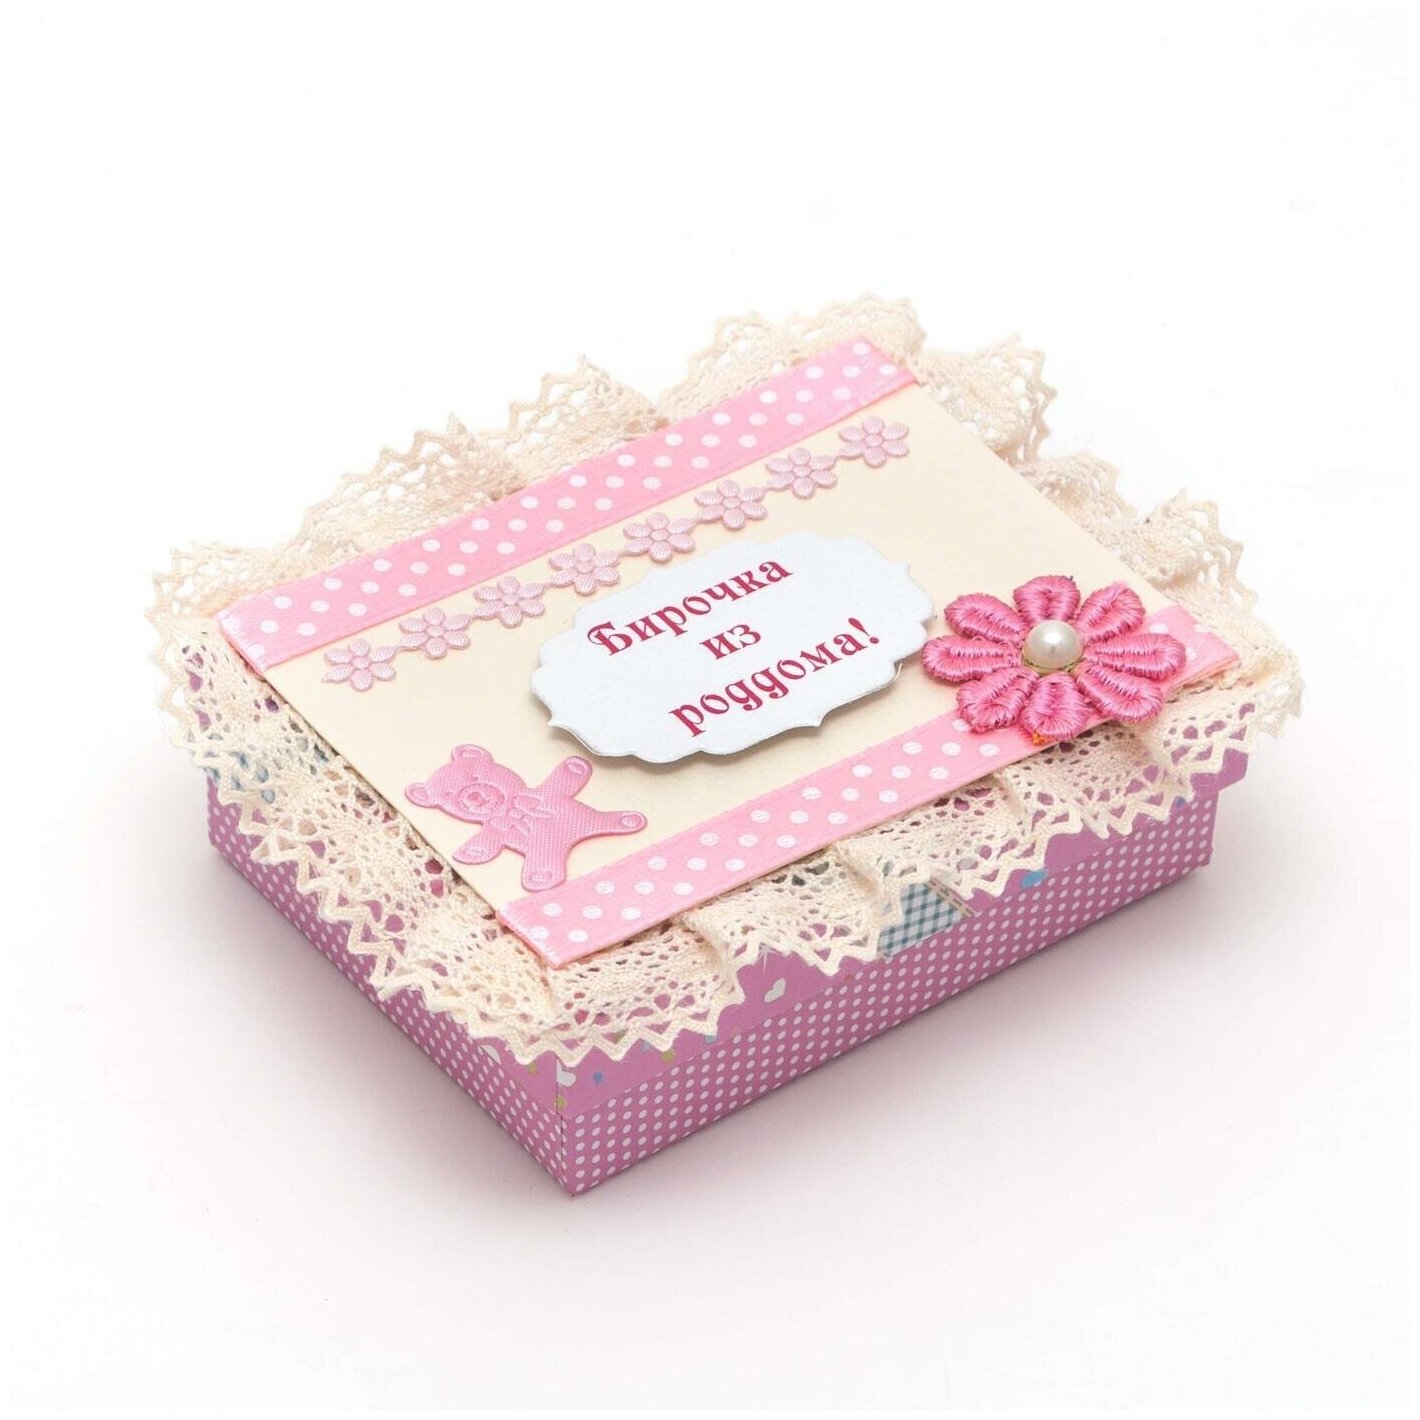 Кружевная коробочка для бирки из роддома для девочки "Наше счастье!" розового цвета, с бежевым вязаным кружевом, текстильным цветочком и аппликацией в виде мишки